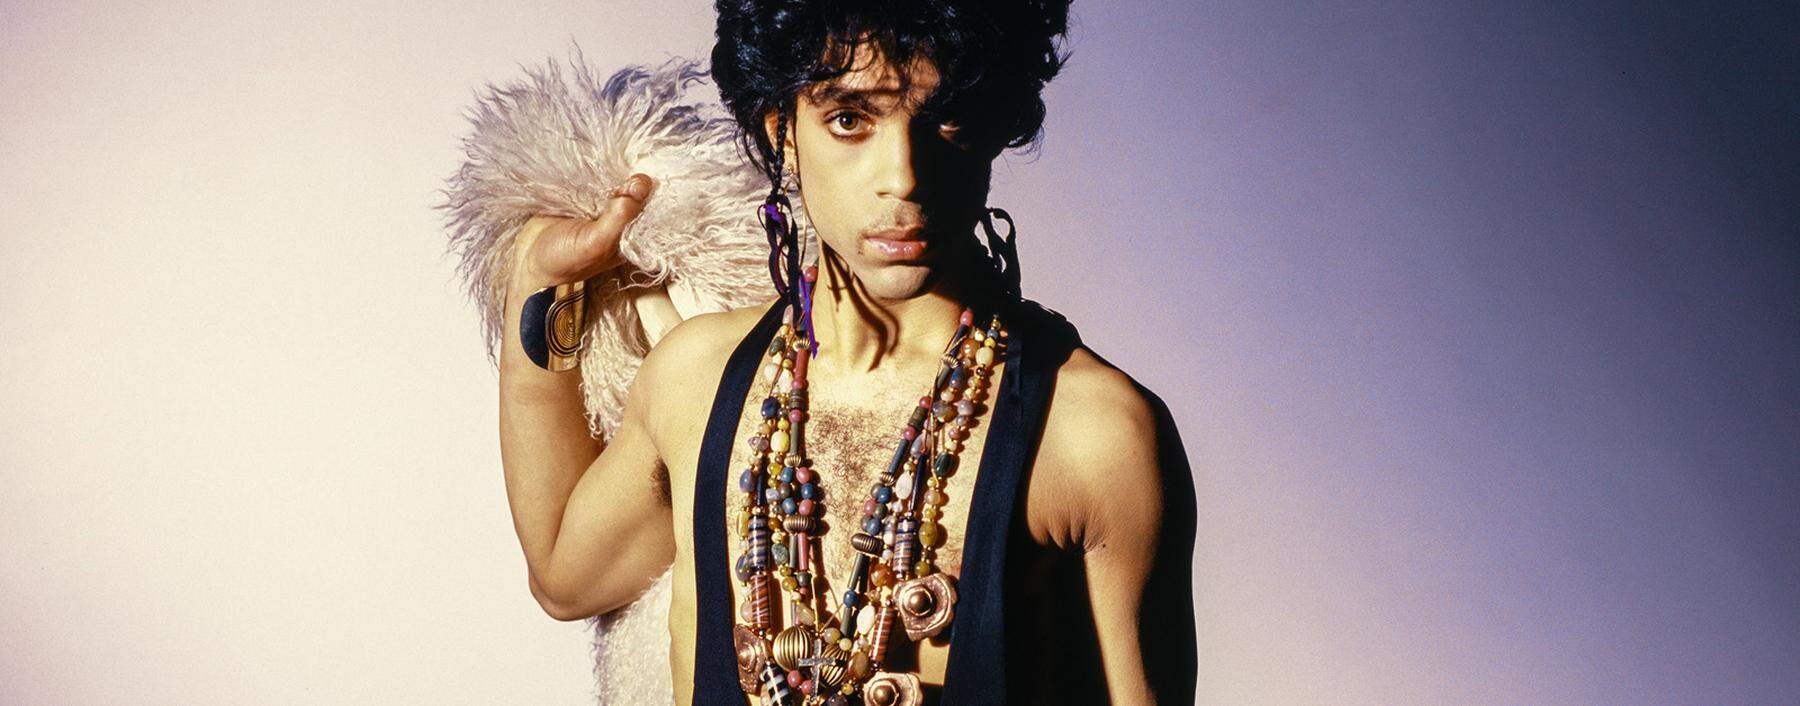 Ein Zeichen seiner Zeit: Der wandlungsfähige Superstar Prince in seines Lebens Mitte – 2016 starb er mit nur 57 Jahren.